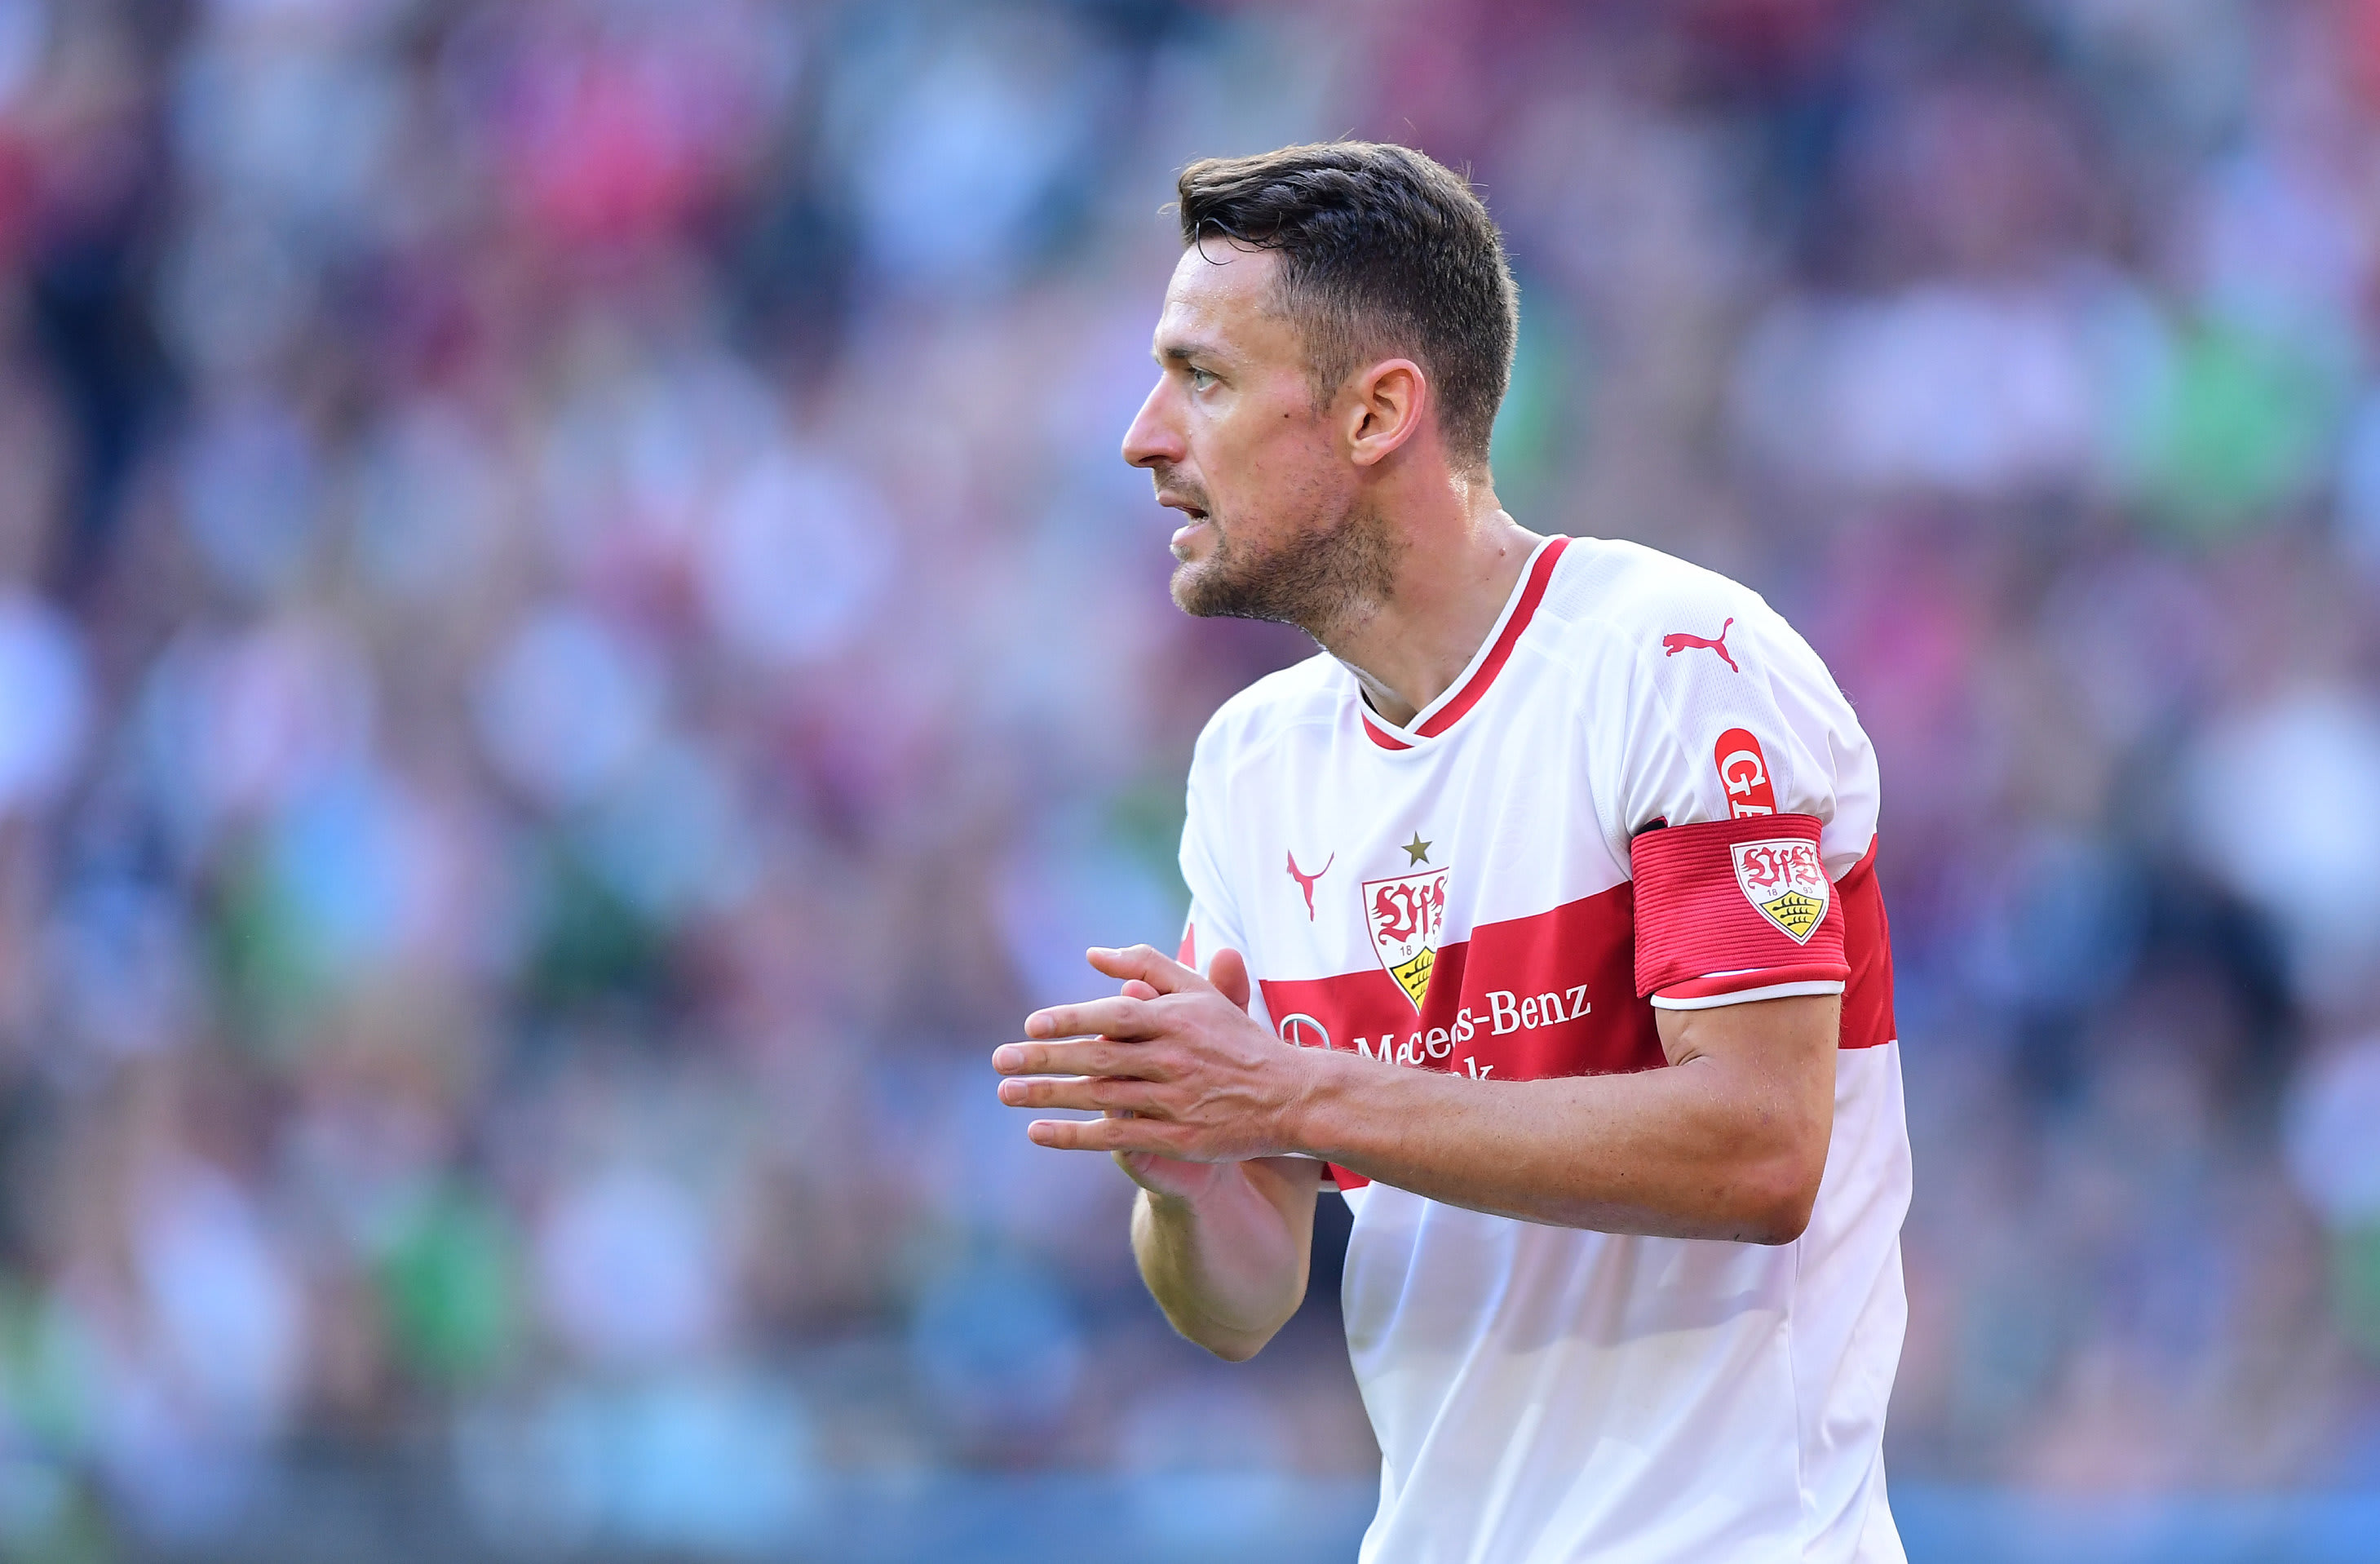 Vreselijke gebeurtenis: vader captain VfB Stuttgart overlijdt in stadion 